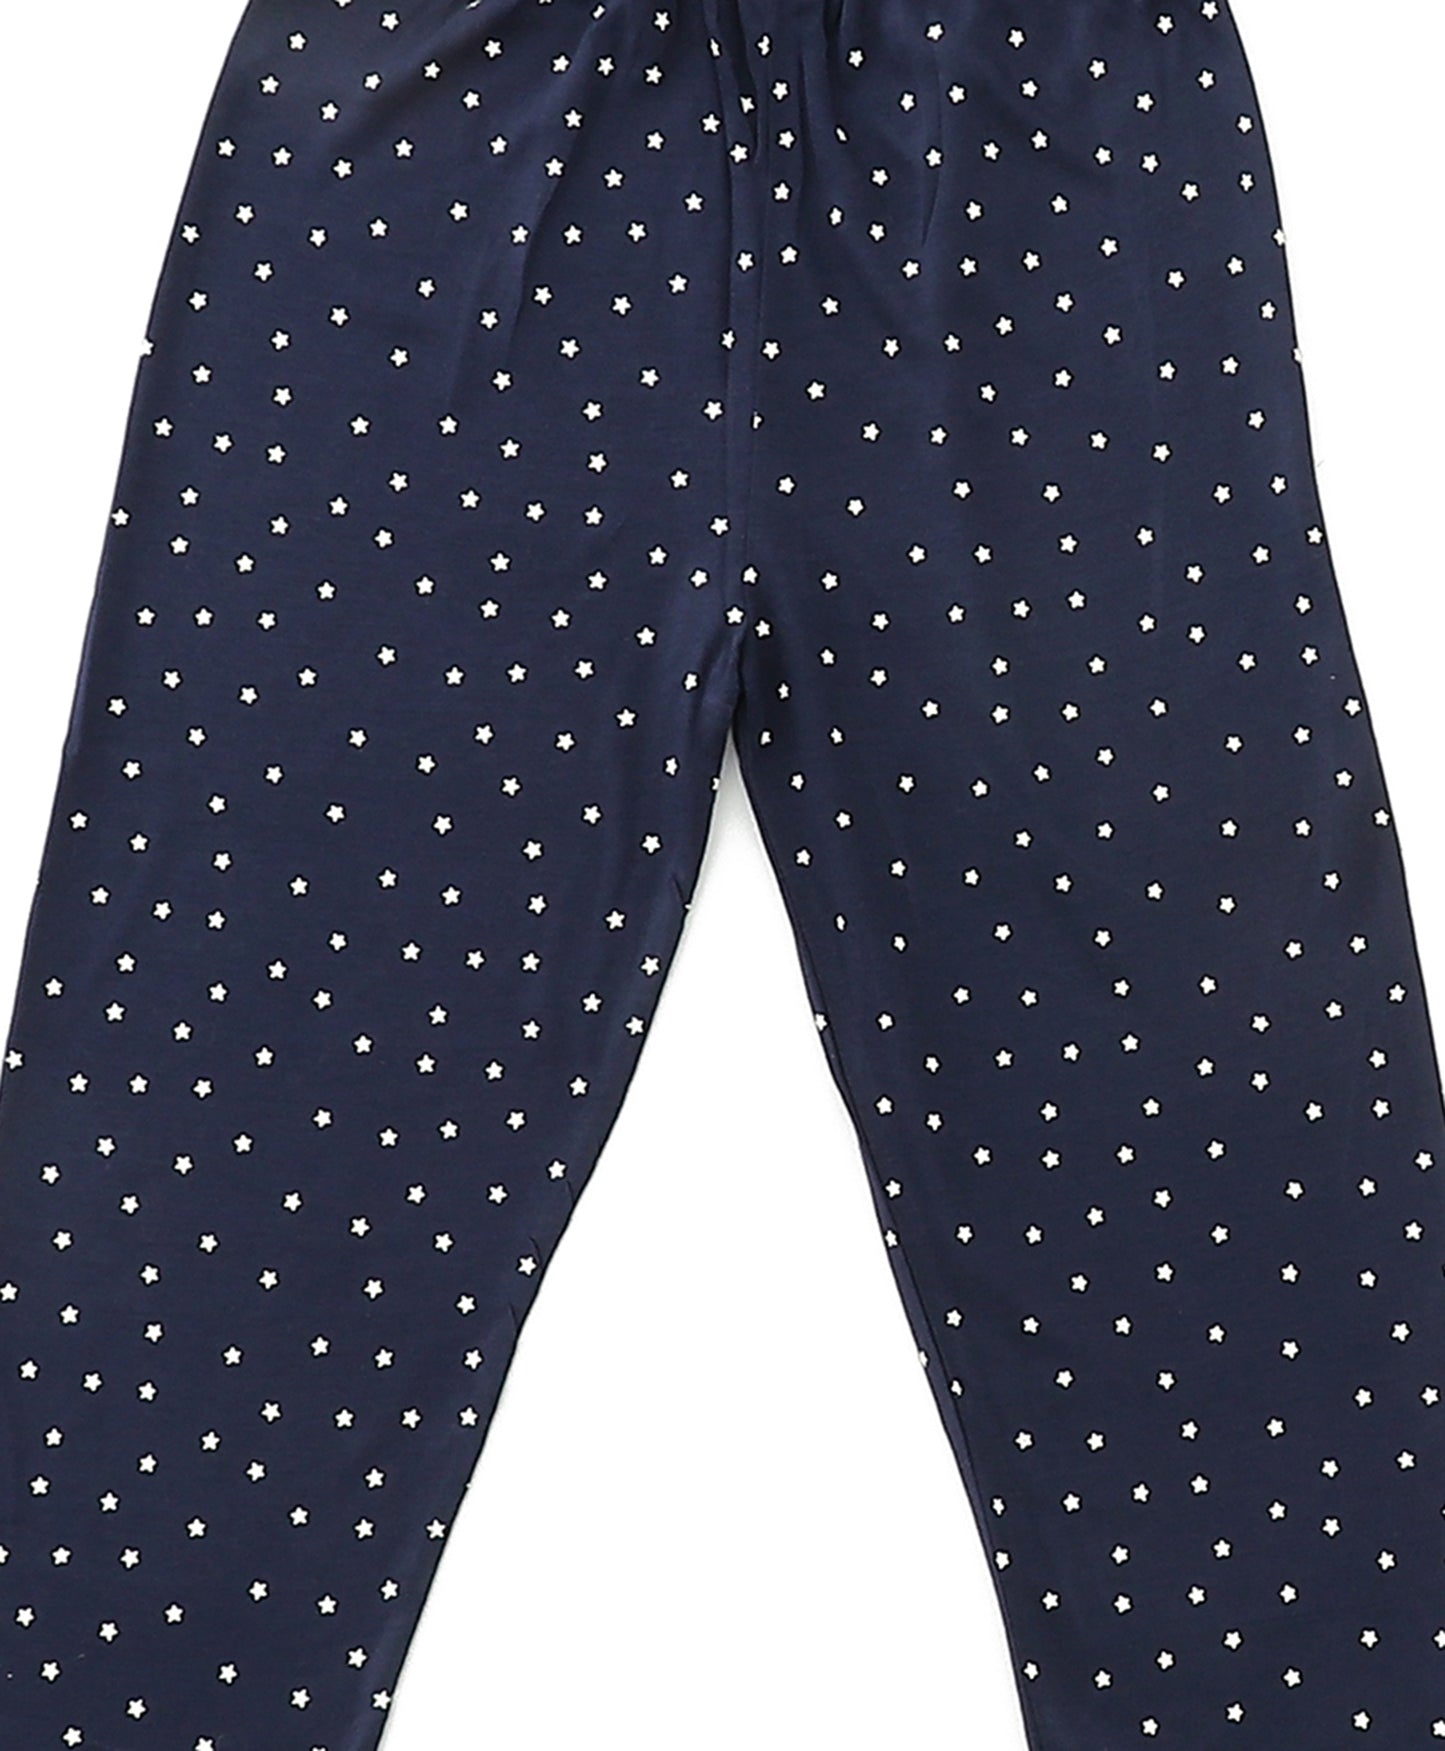 Black Star Printed Pyjamas for Kids